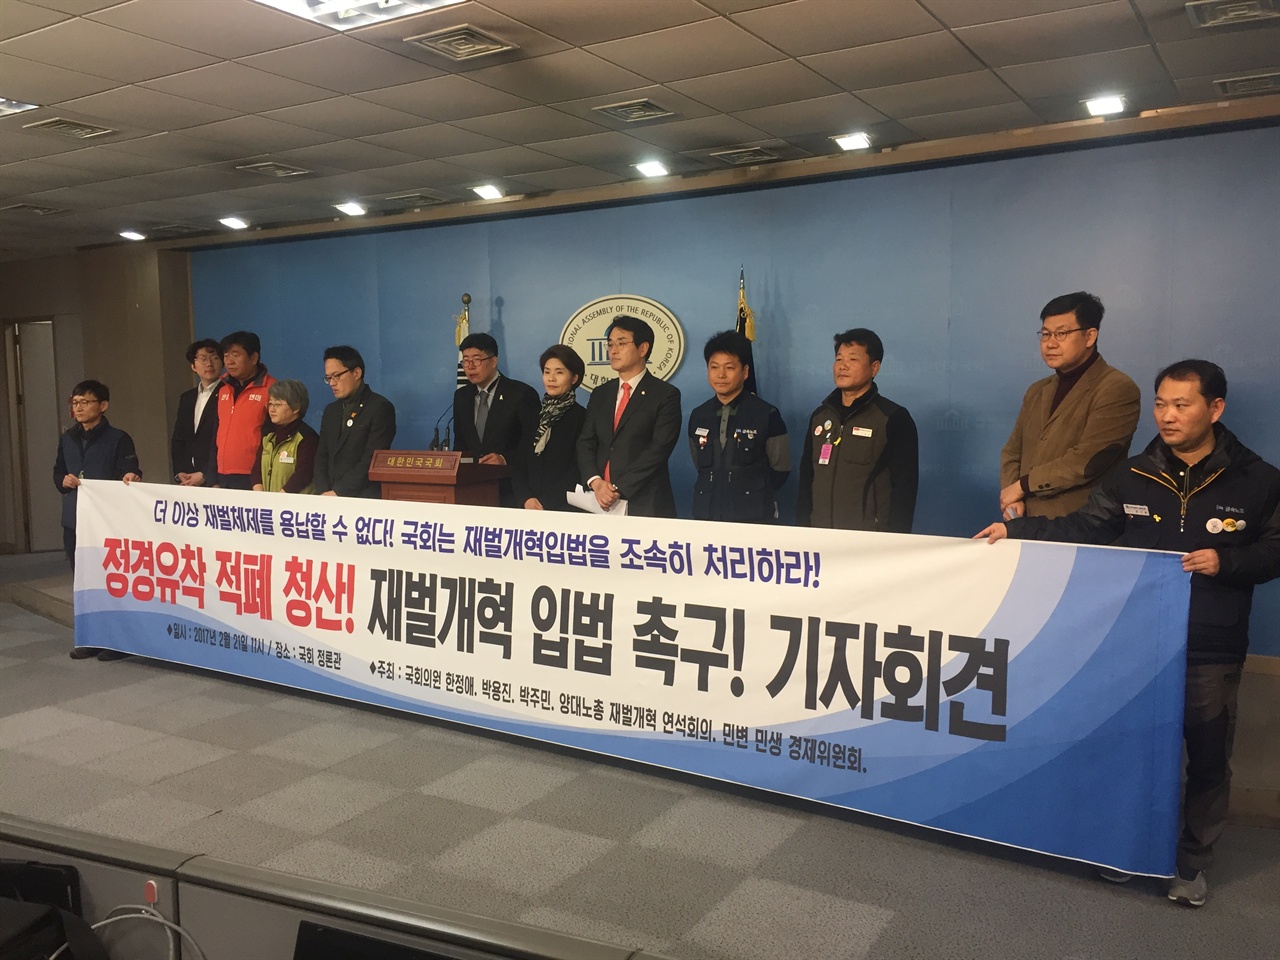 21일 11시 국회 정론관에서 정경유착의 고리를 끊고, 재벌체제 해체를 위한 입법발의 계획 및 입법을 촉구하는 기자회견이 진행됐다.